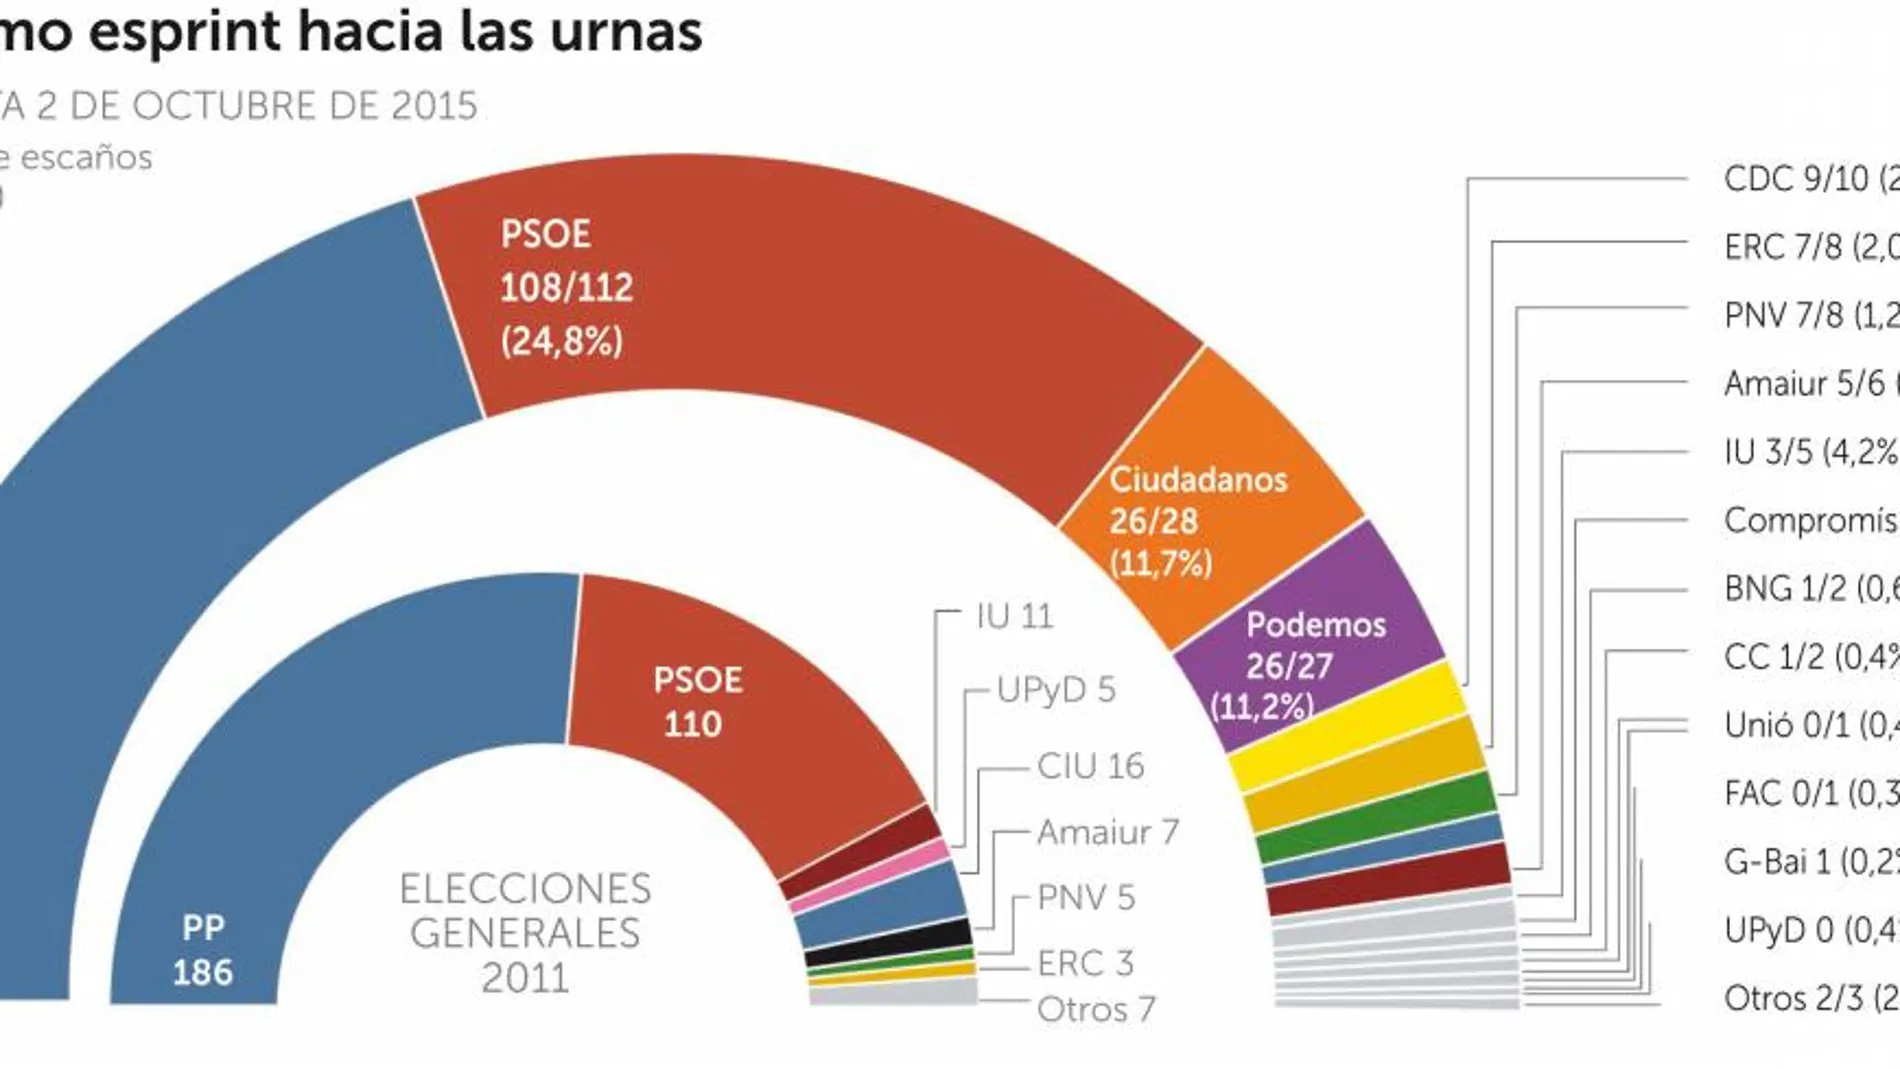 El PP toma ventaja, C’s adelanta a Podemos y el PSOE se frena